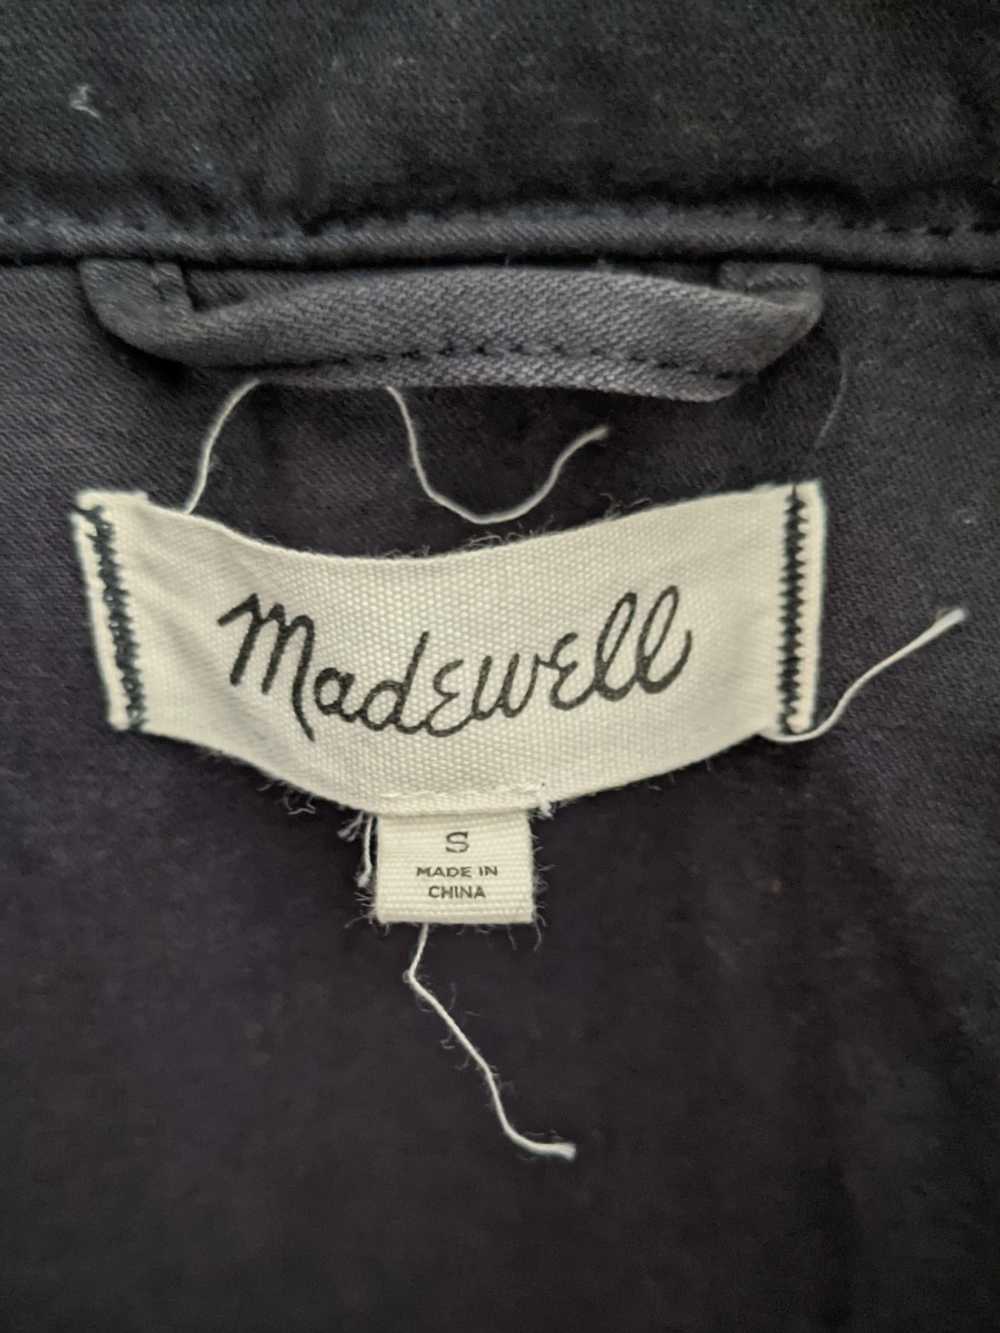 Madewell - Field Jacket - image 6